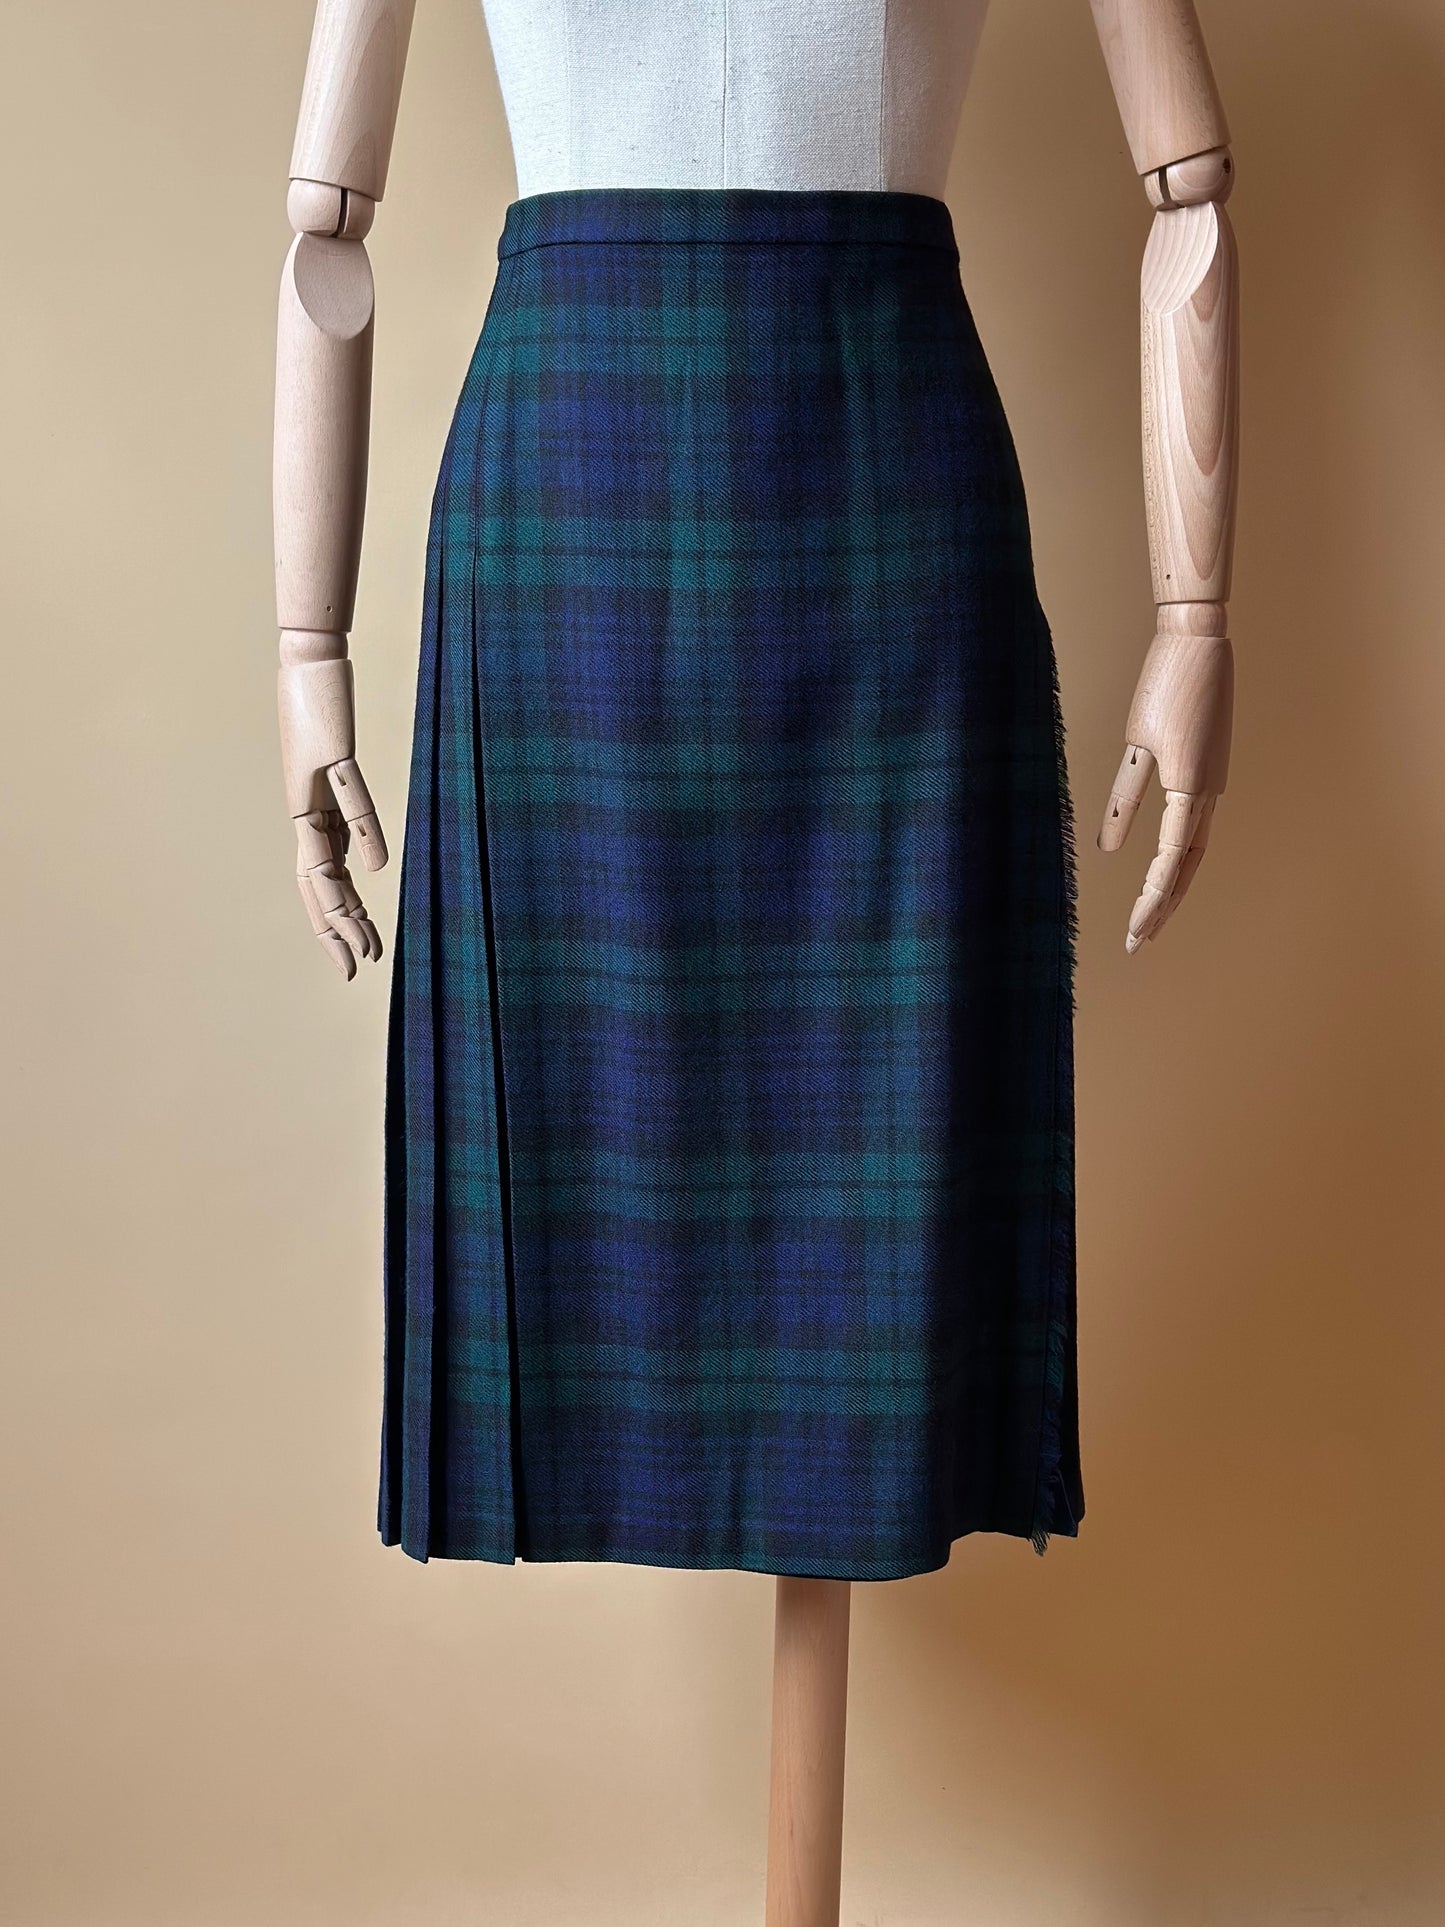 Vintage Tartan Green & Blue Pleated Skirt